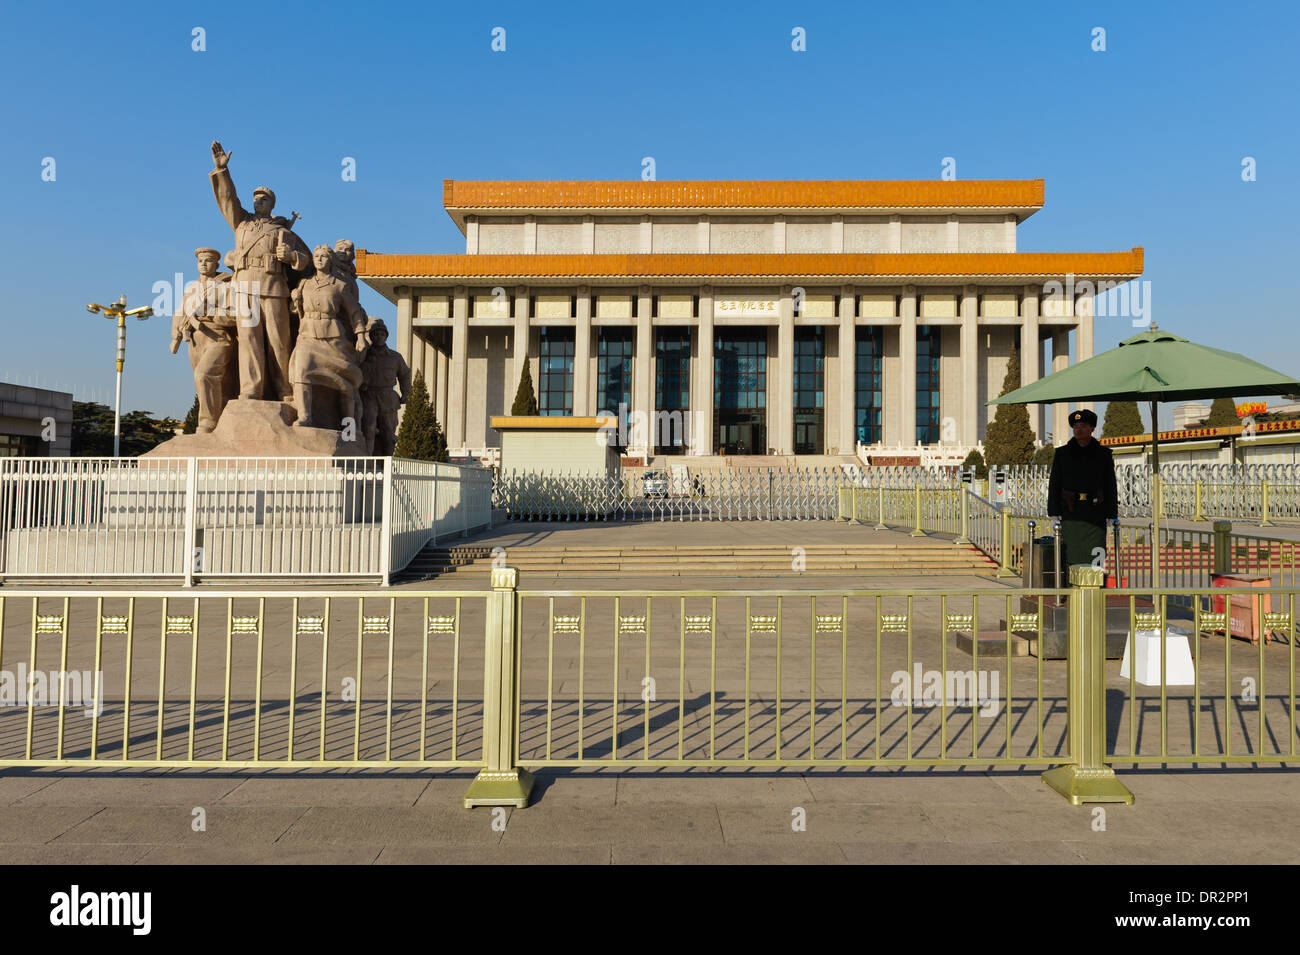 Garde côtière canadienne et sculptures héroïques devant le mausolée de Mao Zedong. Beijing, Chine. Banque D'Images